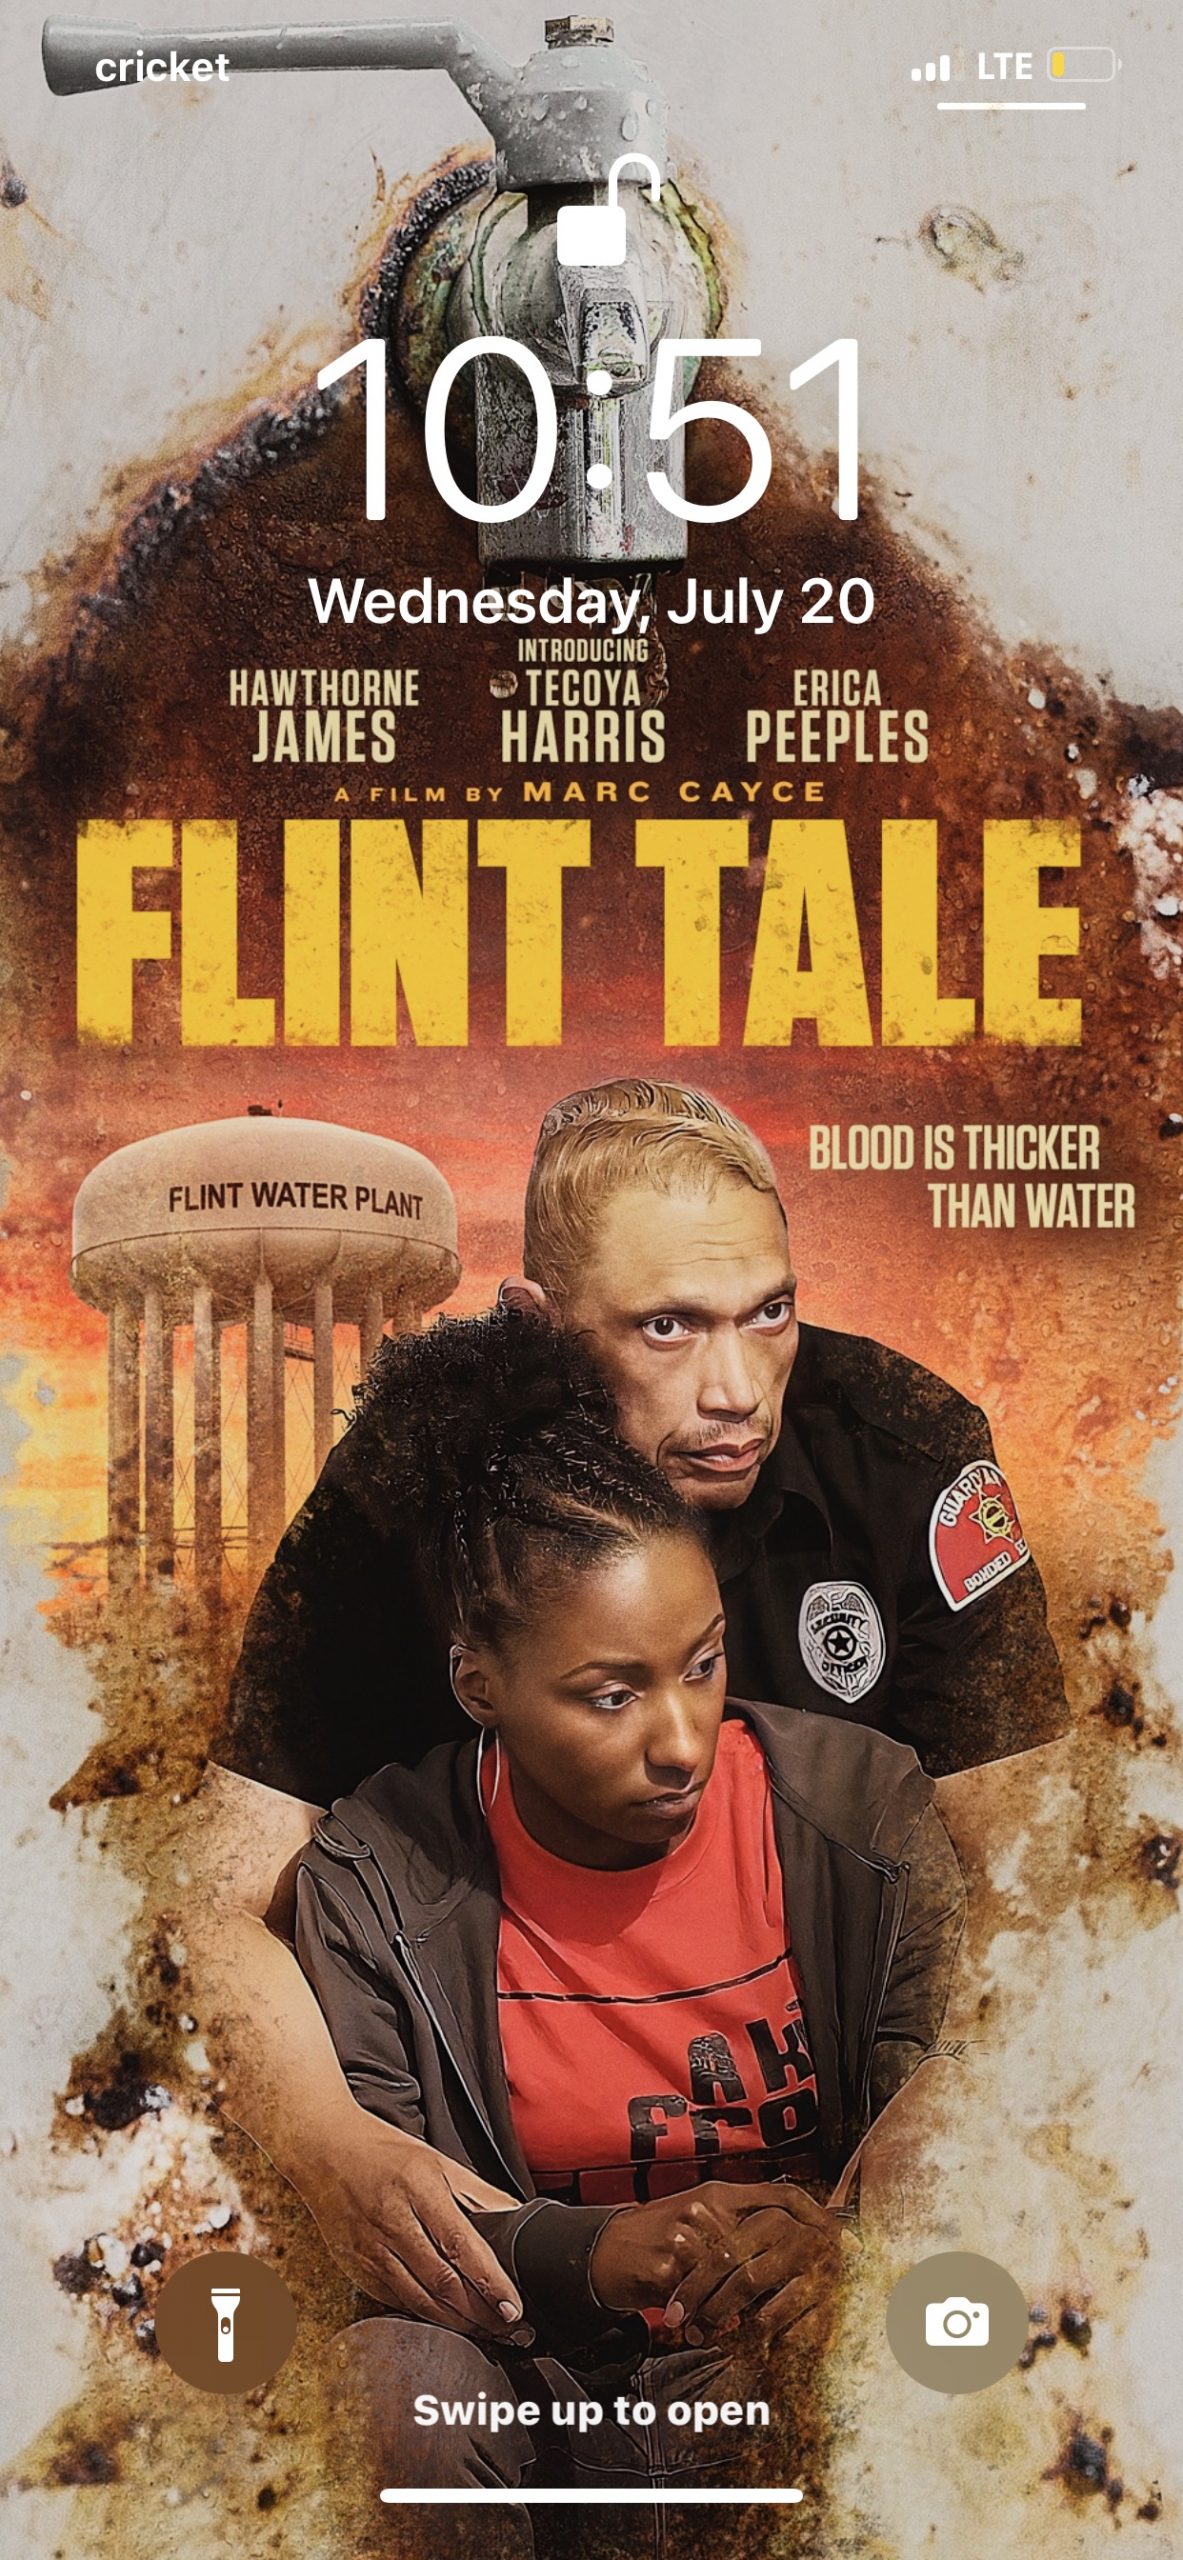 Flint Tale